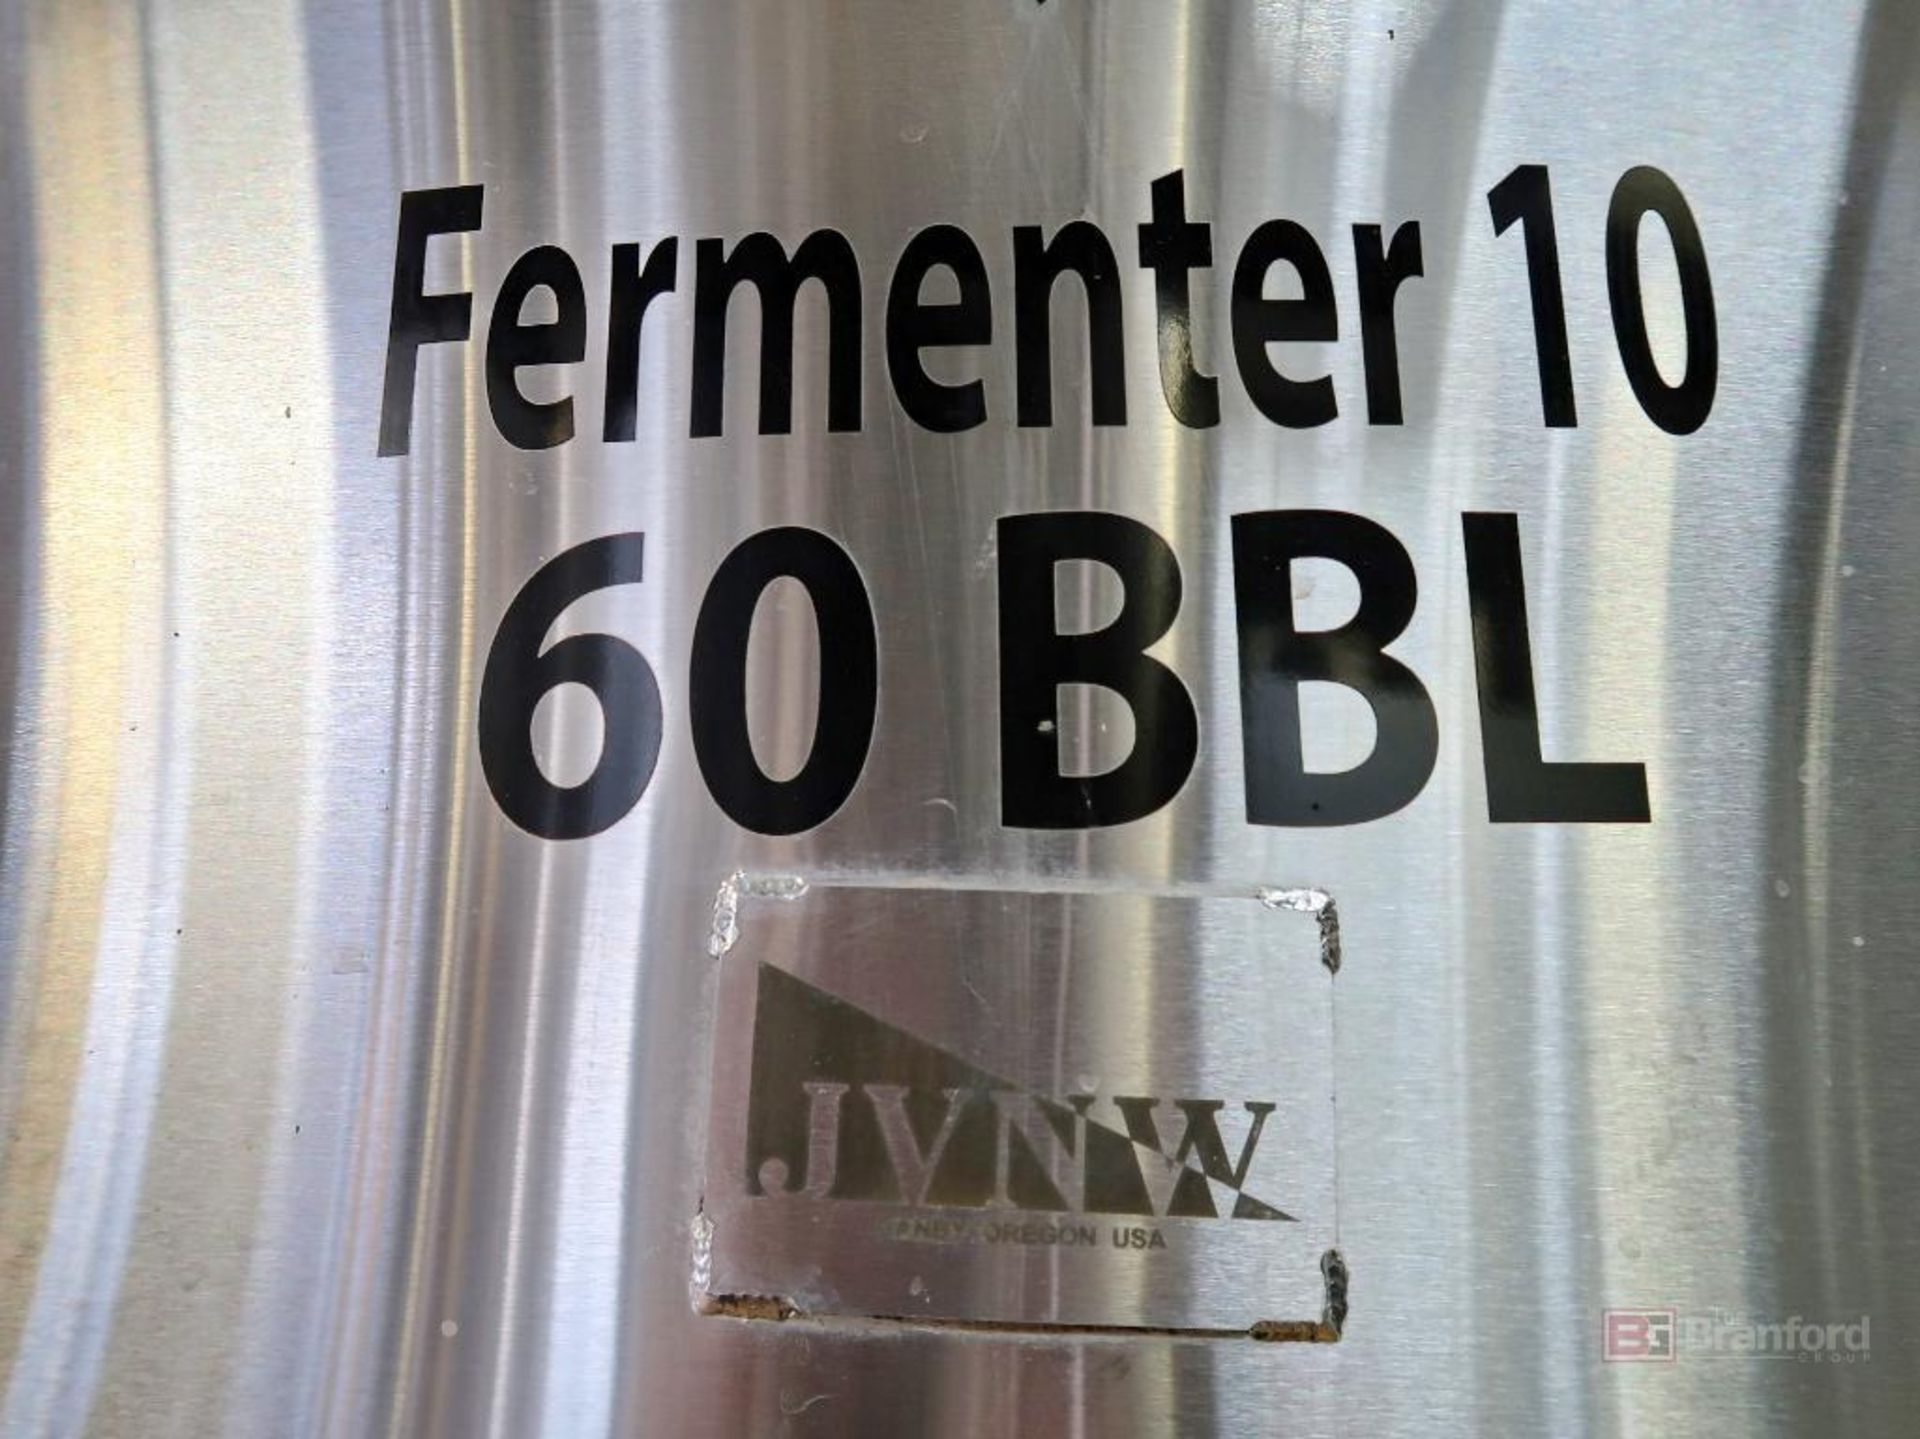 JVNW 60 BBL S/S Fermenter Tank - Image 3 of 4